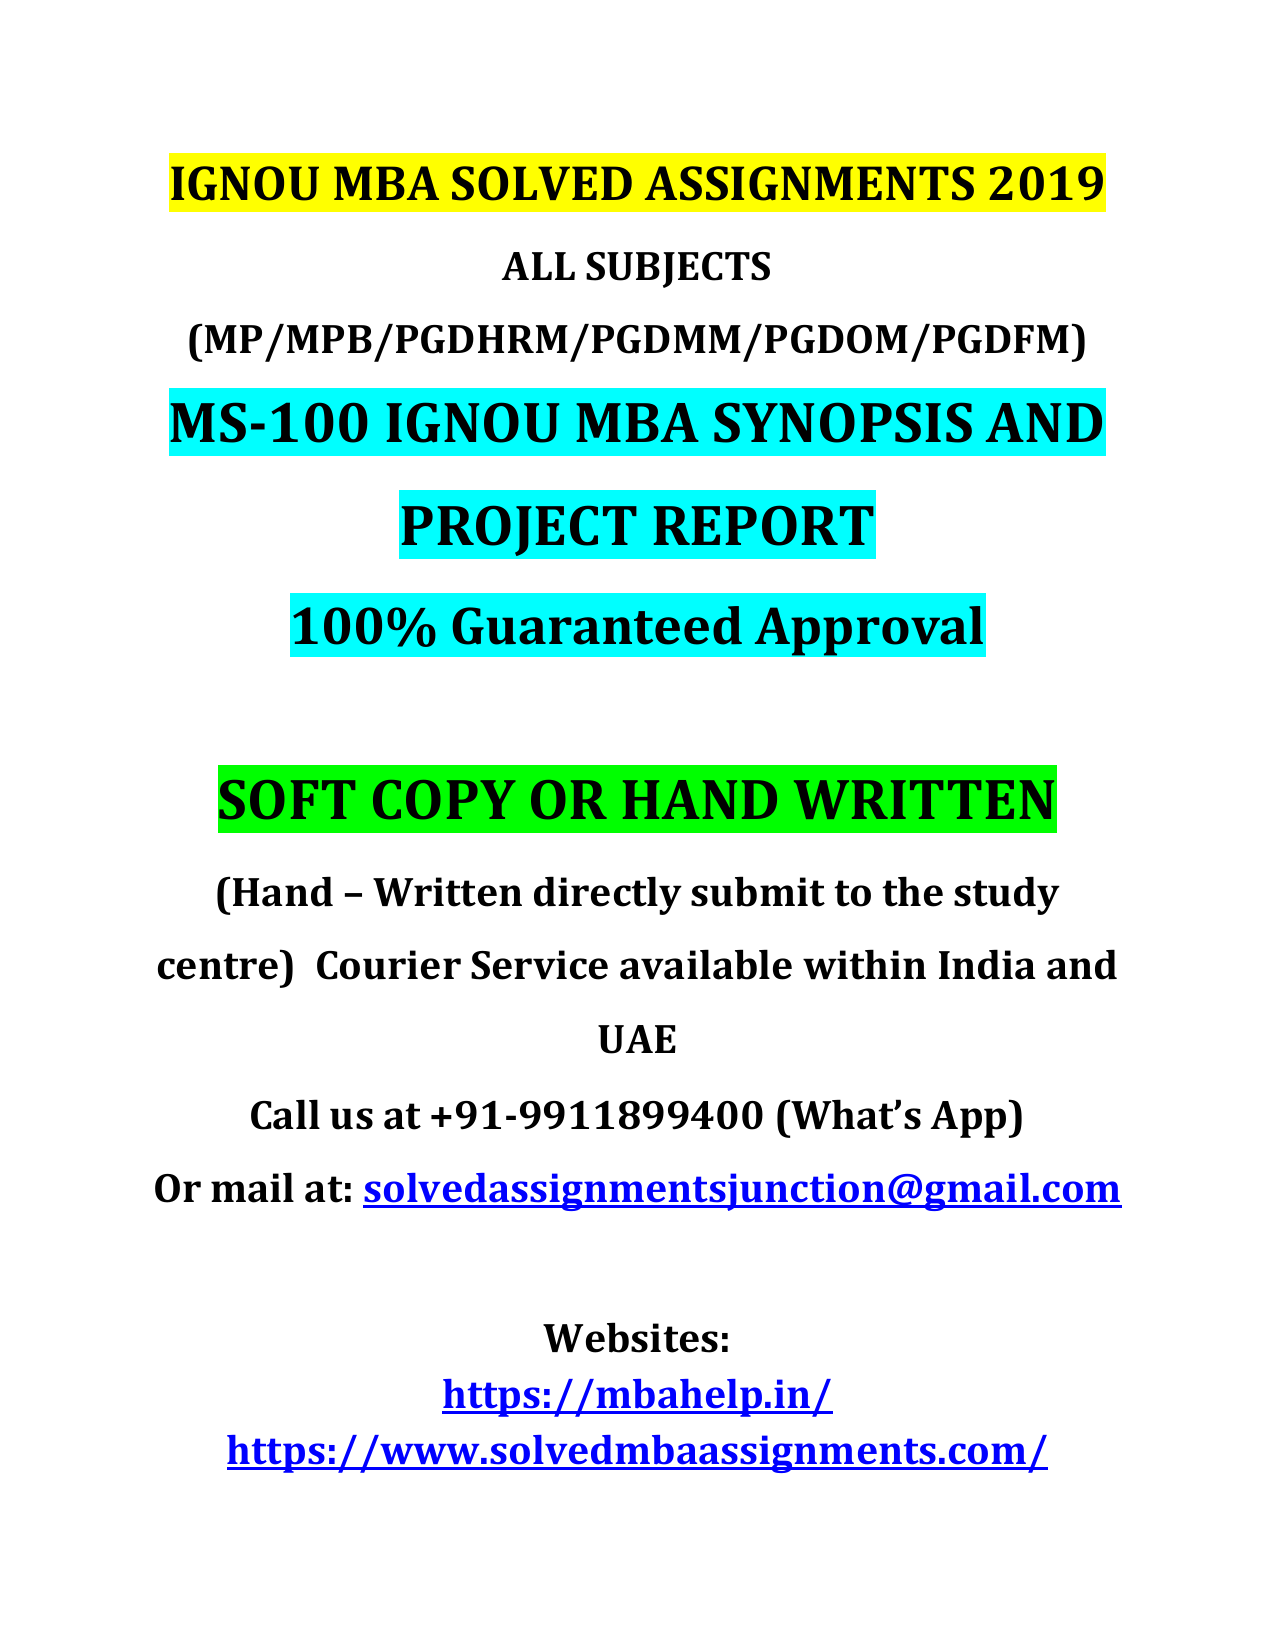 ignou dissertation sample pdf download